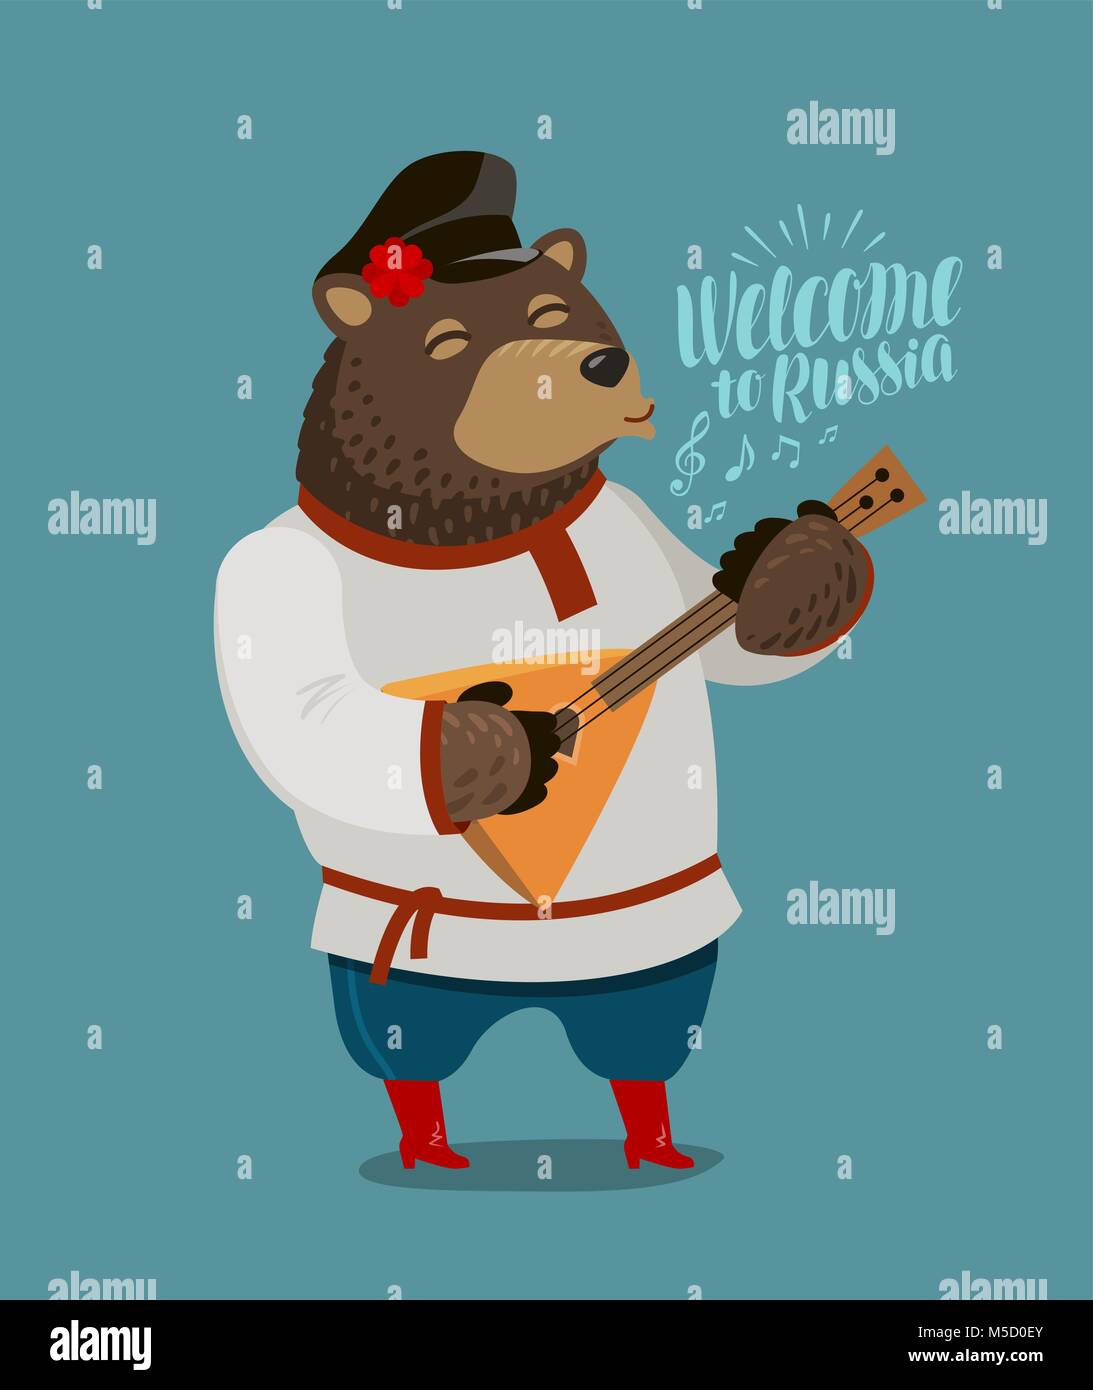 Lustige Russische Bär spielt auf balalaika. Russland, Moskau Konzept. Cartoon Vector Illustration Stock Vektor